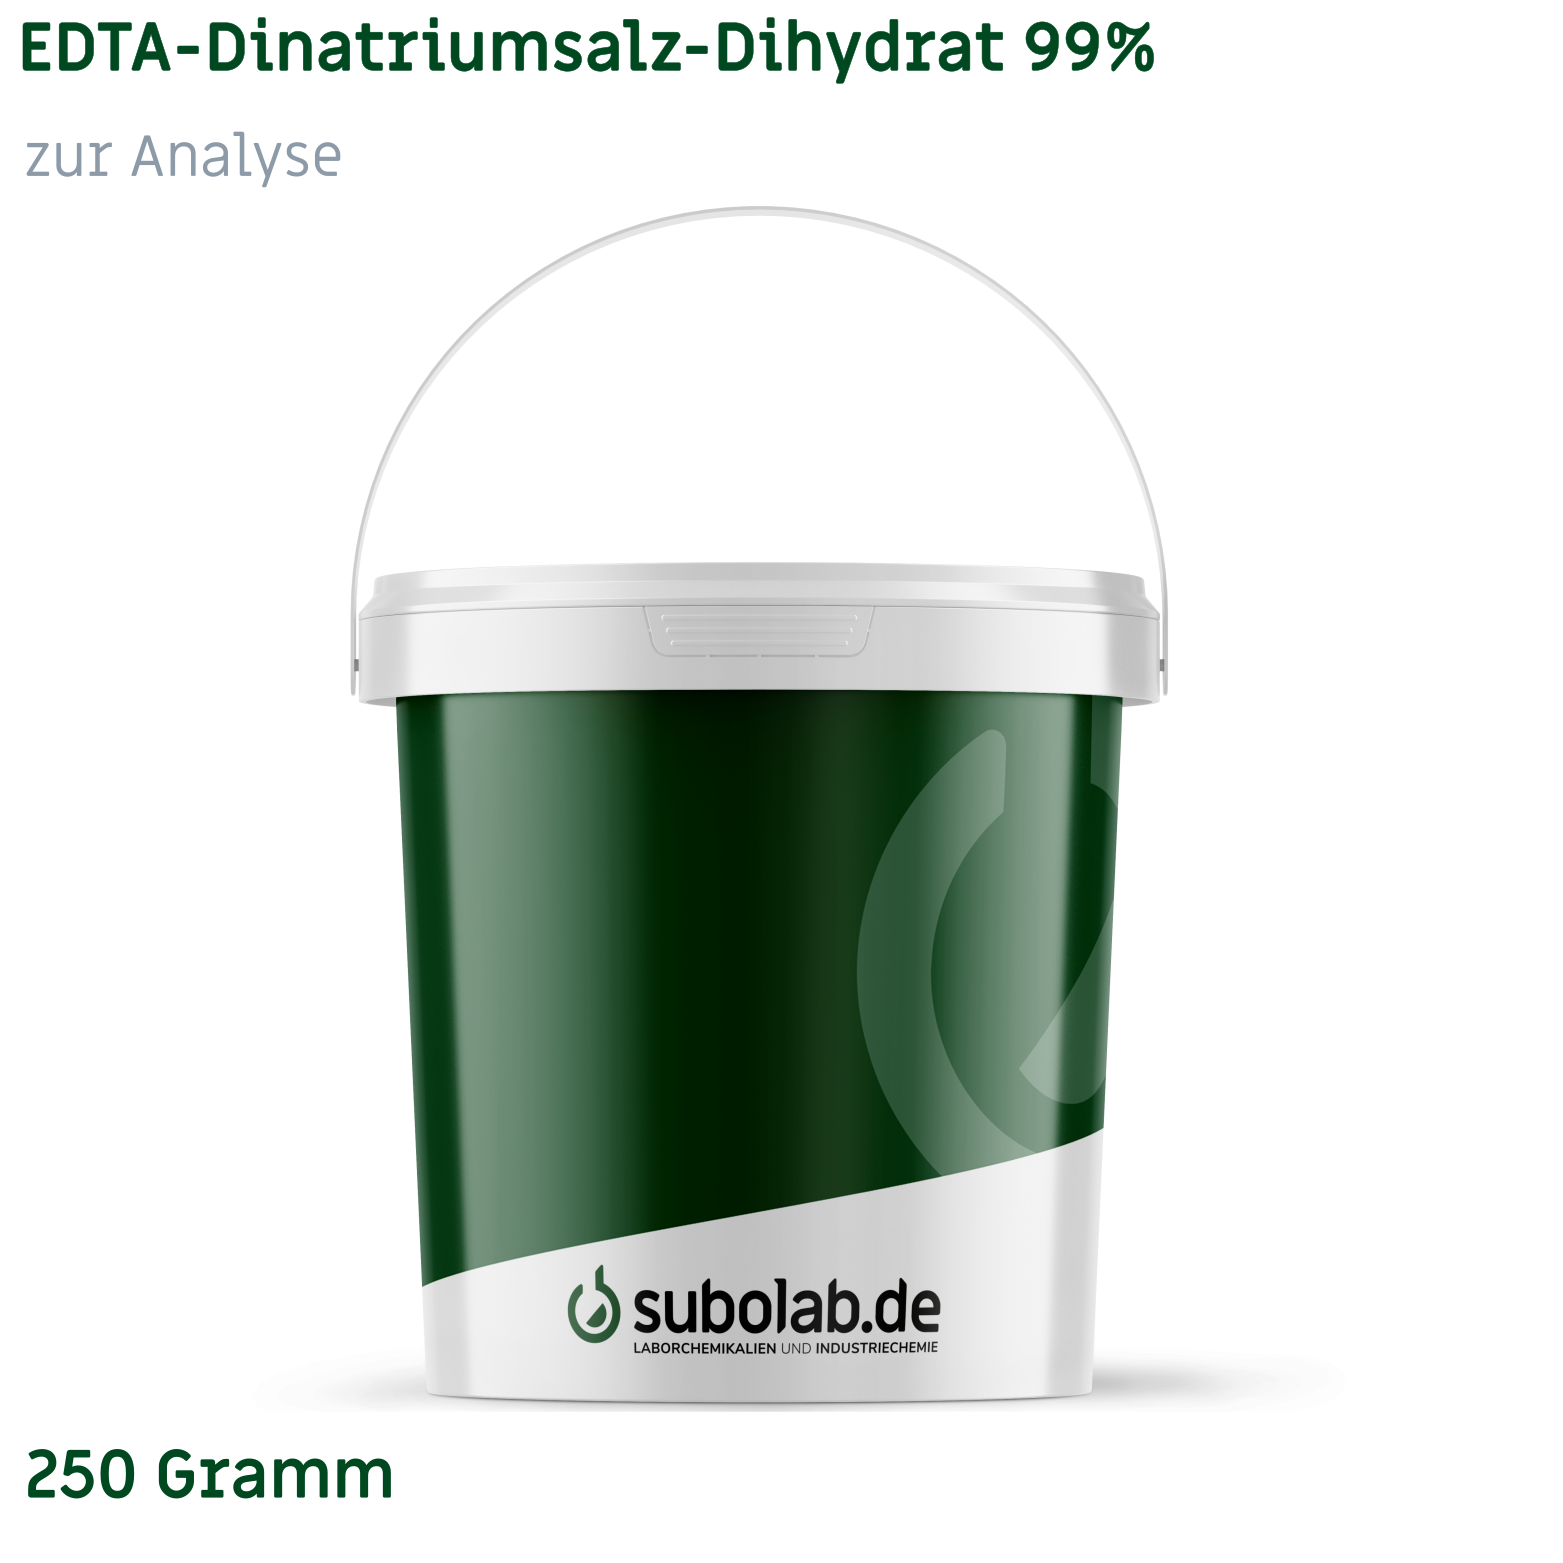 Bild von EDTA - Dinatriumsalz - Dihydrat 99% zur Analyse (250 Gramm)